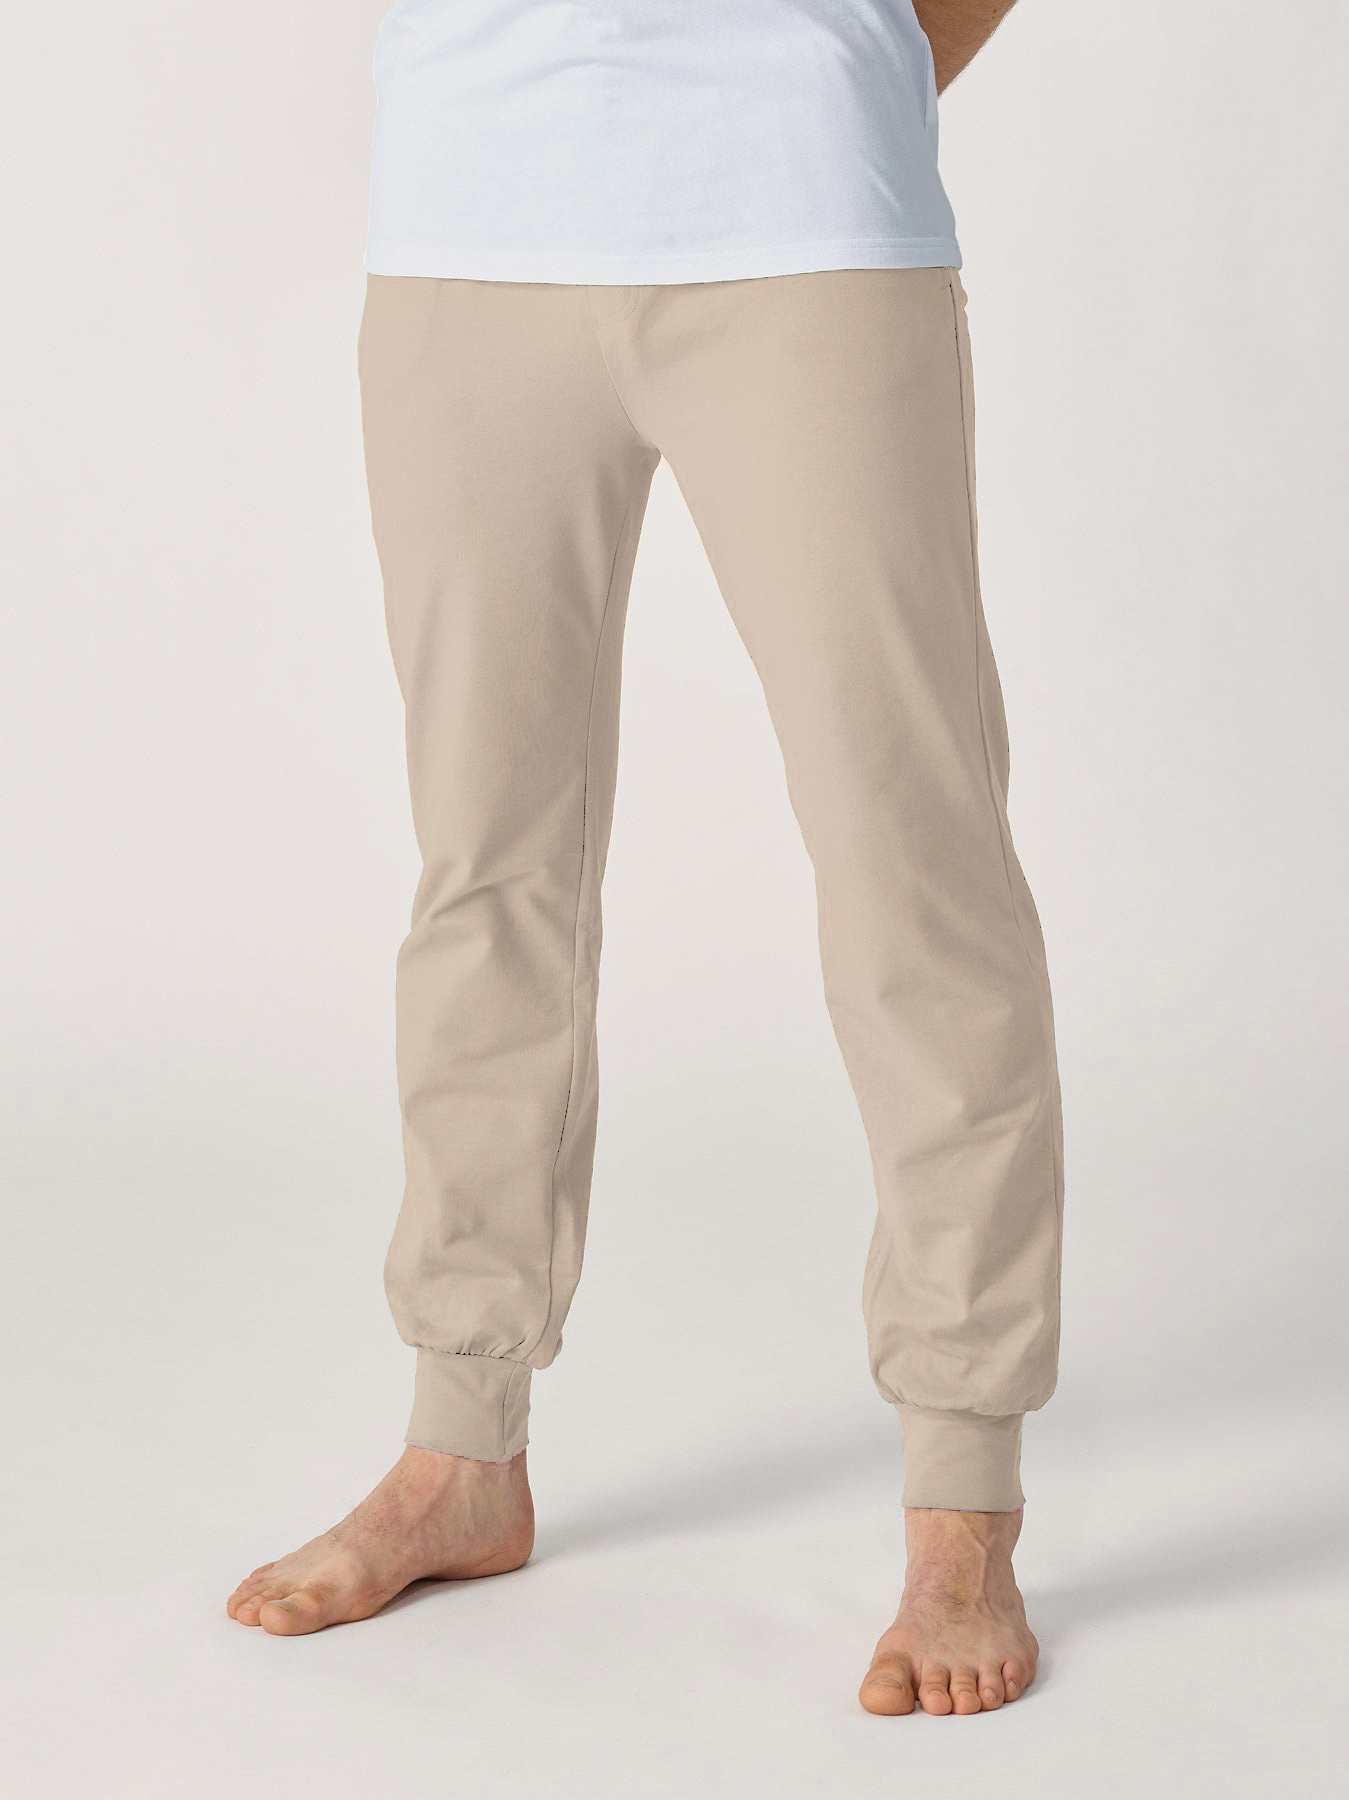 12: Yoga bukser til mænd, økologisk - Light Taupe Large